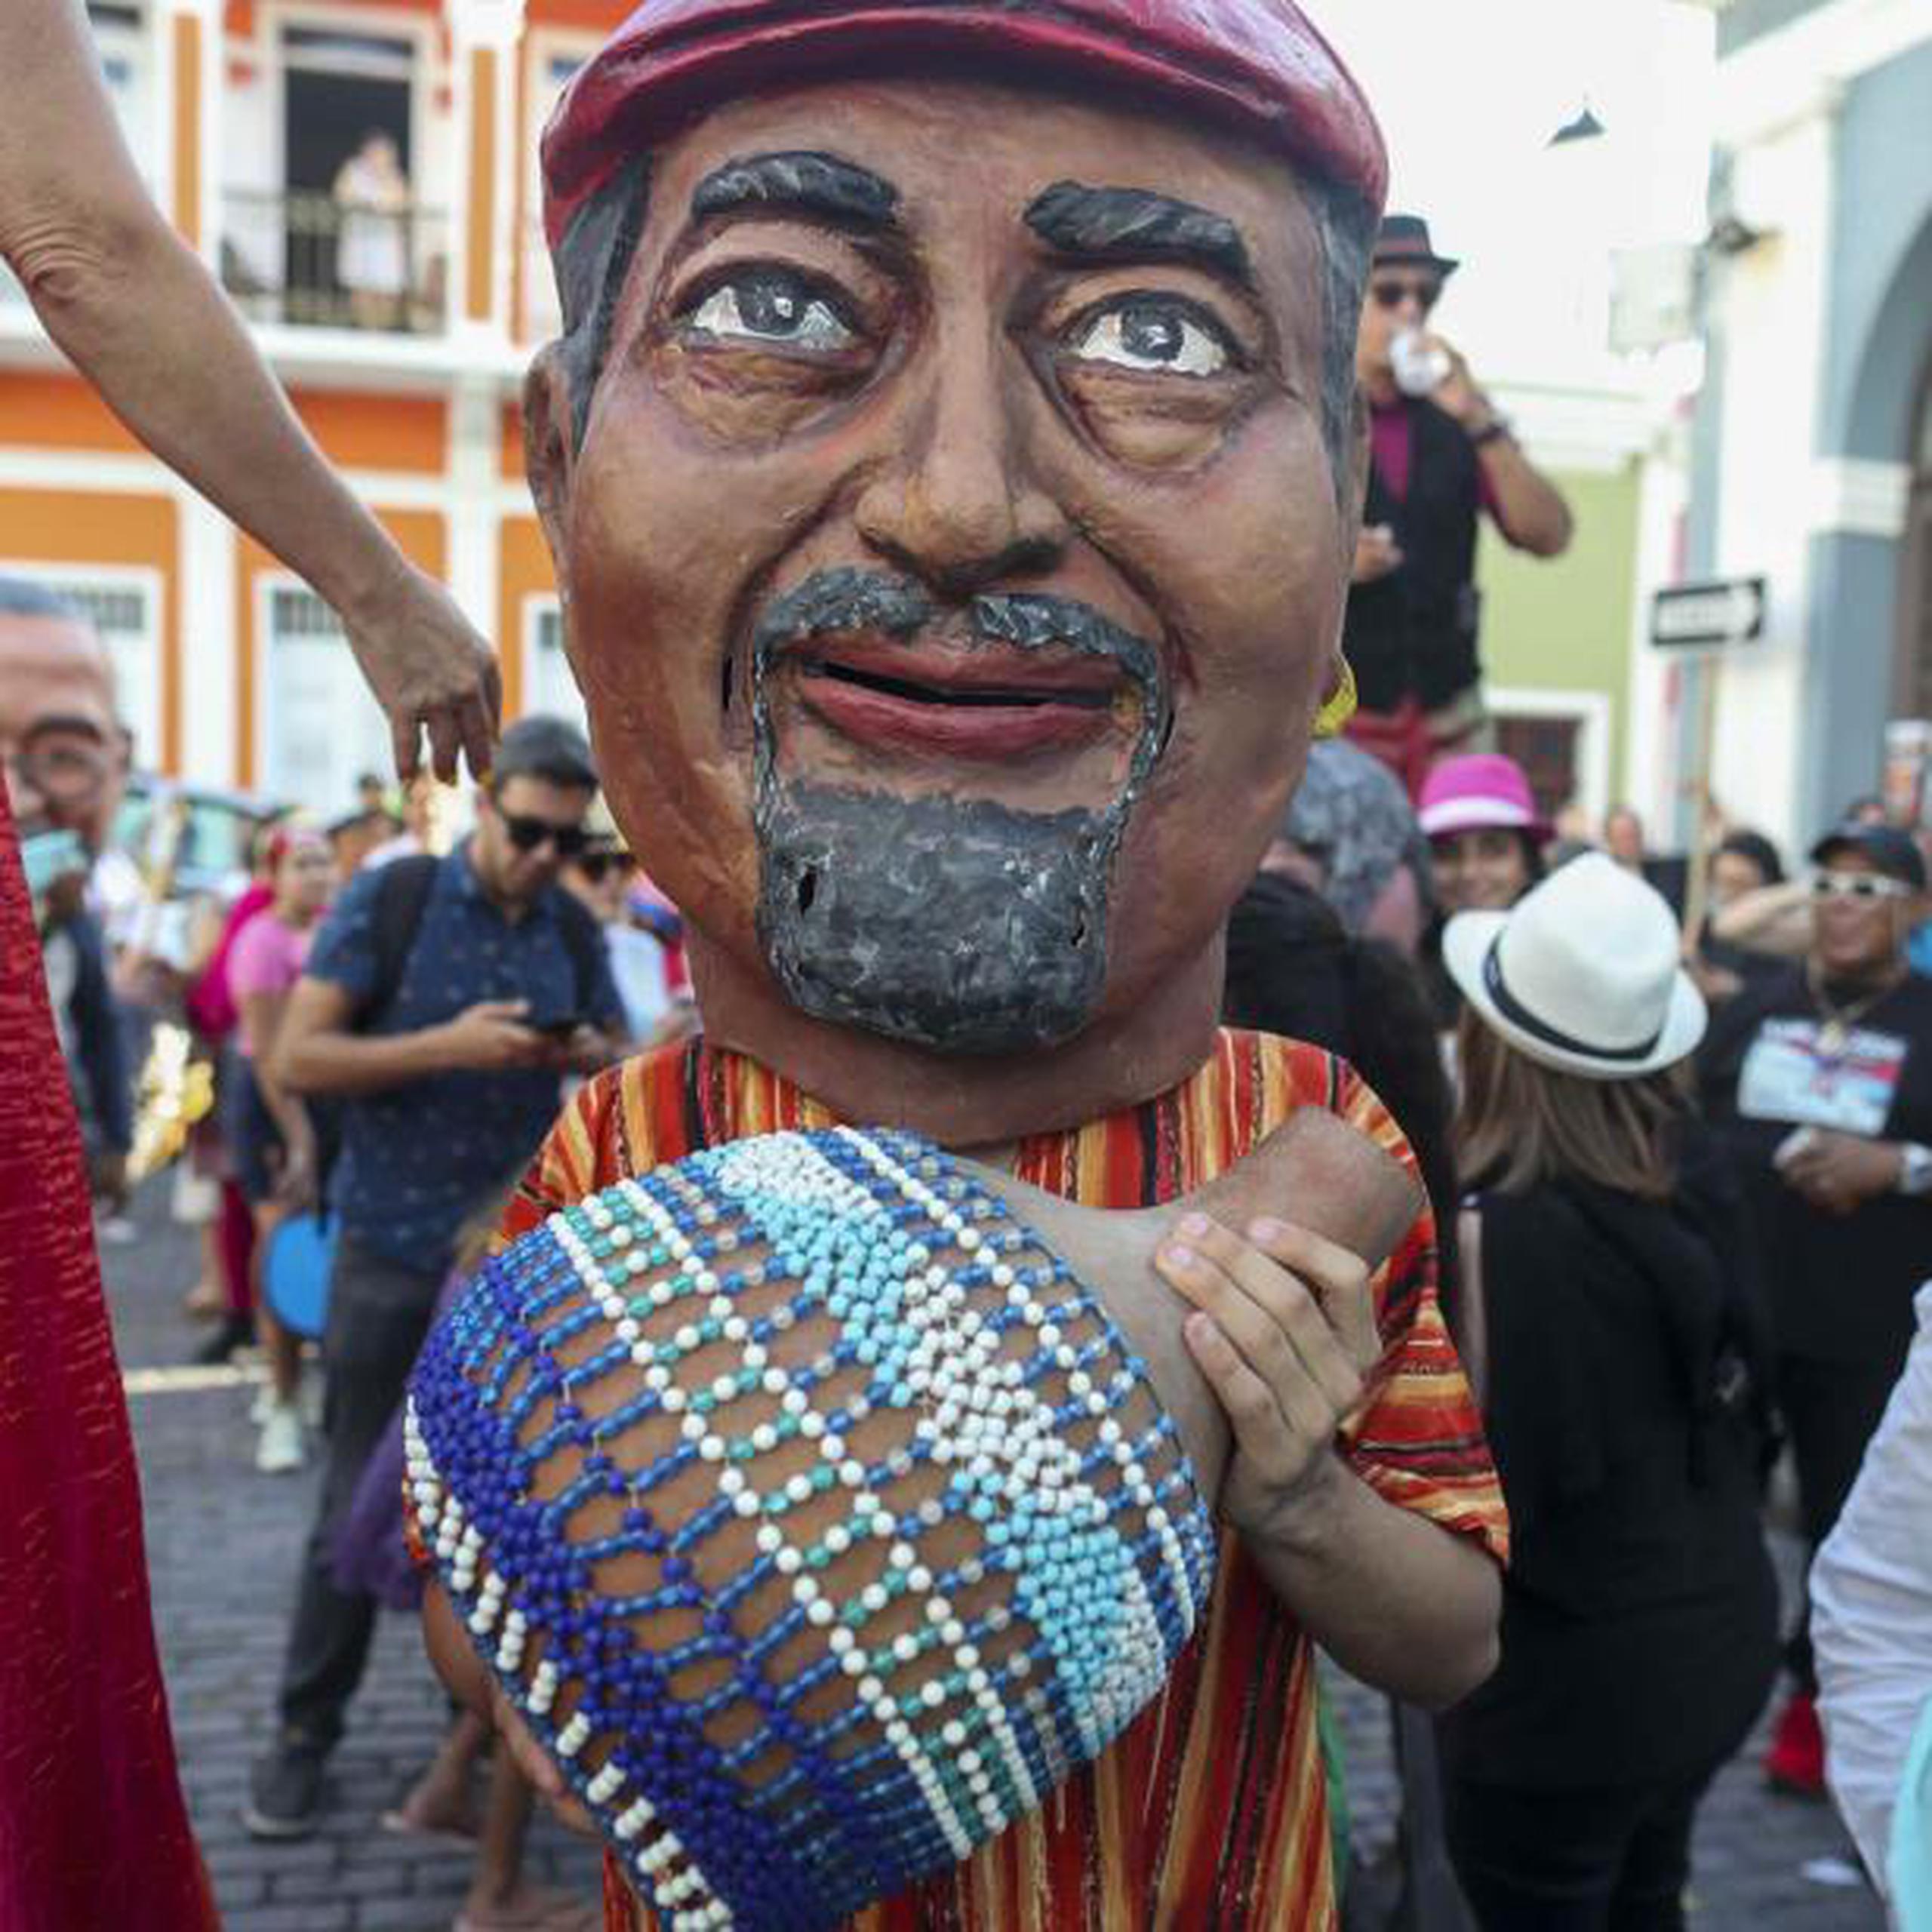 Las Fiestas de la Calle San Sebastián celebran su 50 aniversario este año. (david.villafane@gfrmedia.com)